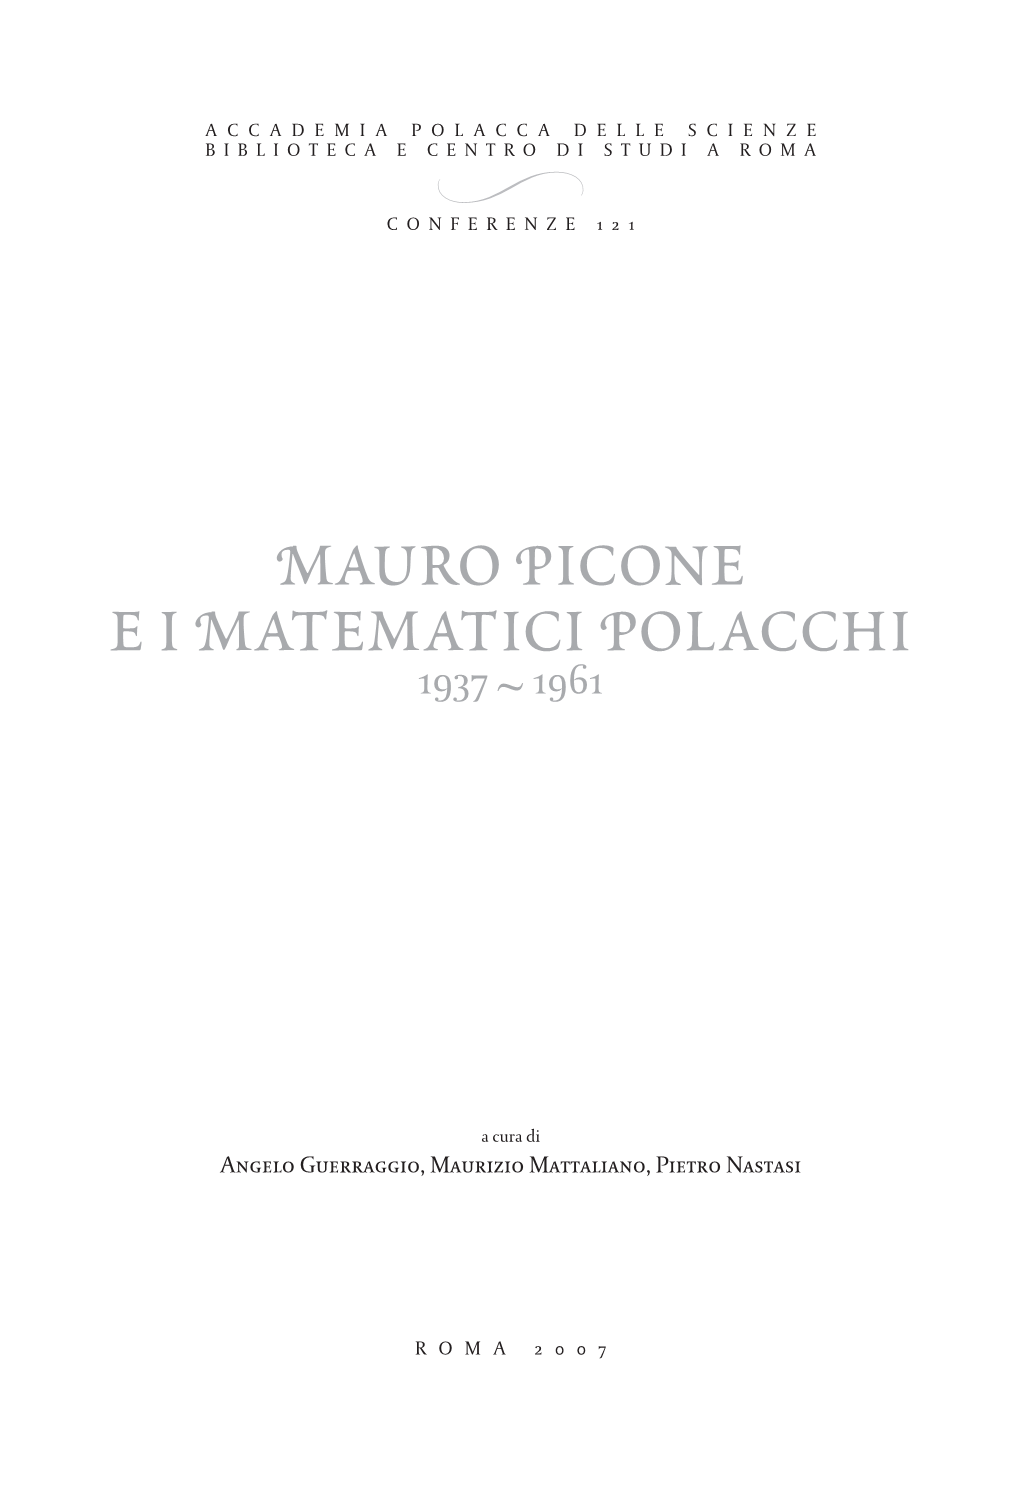 Mauro Picone Eimatematici Polacchi